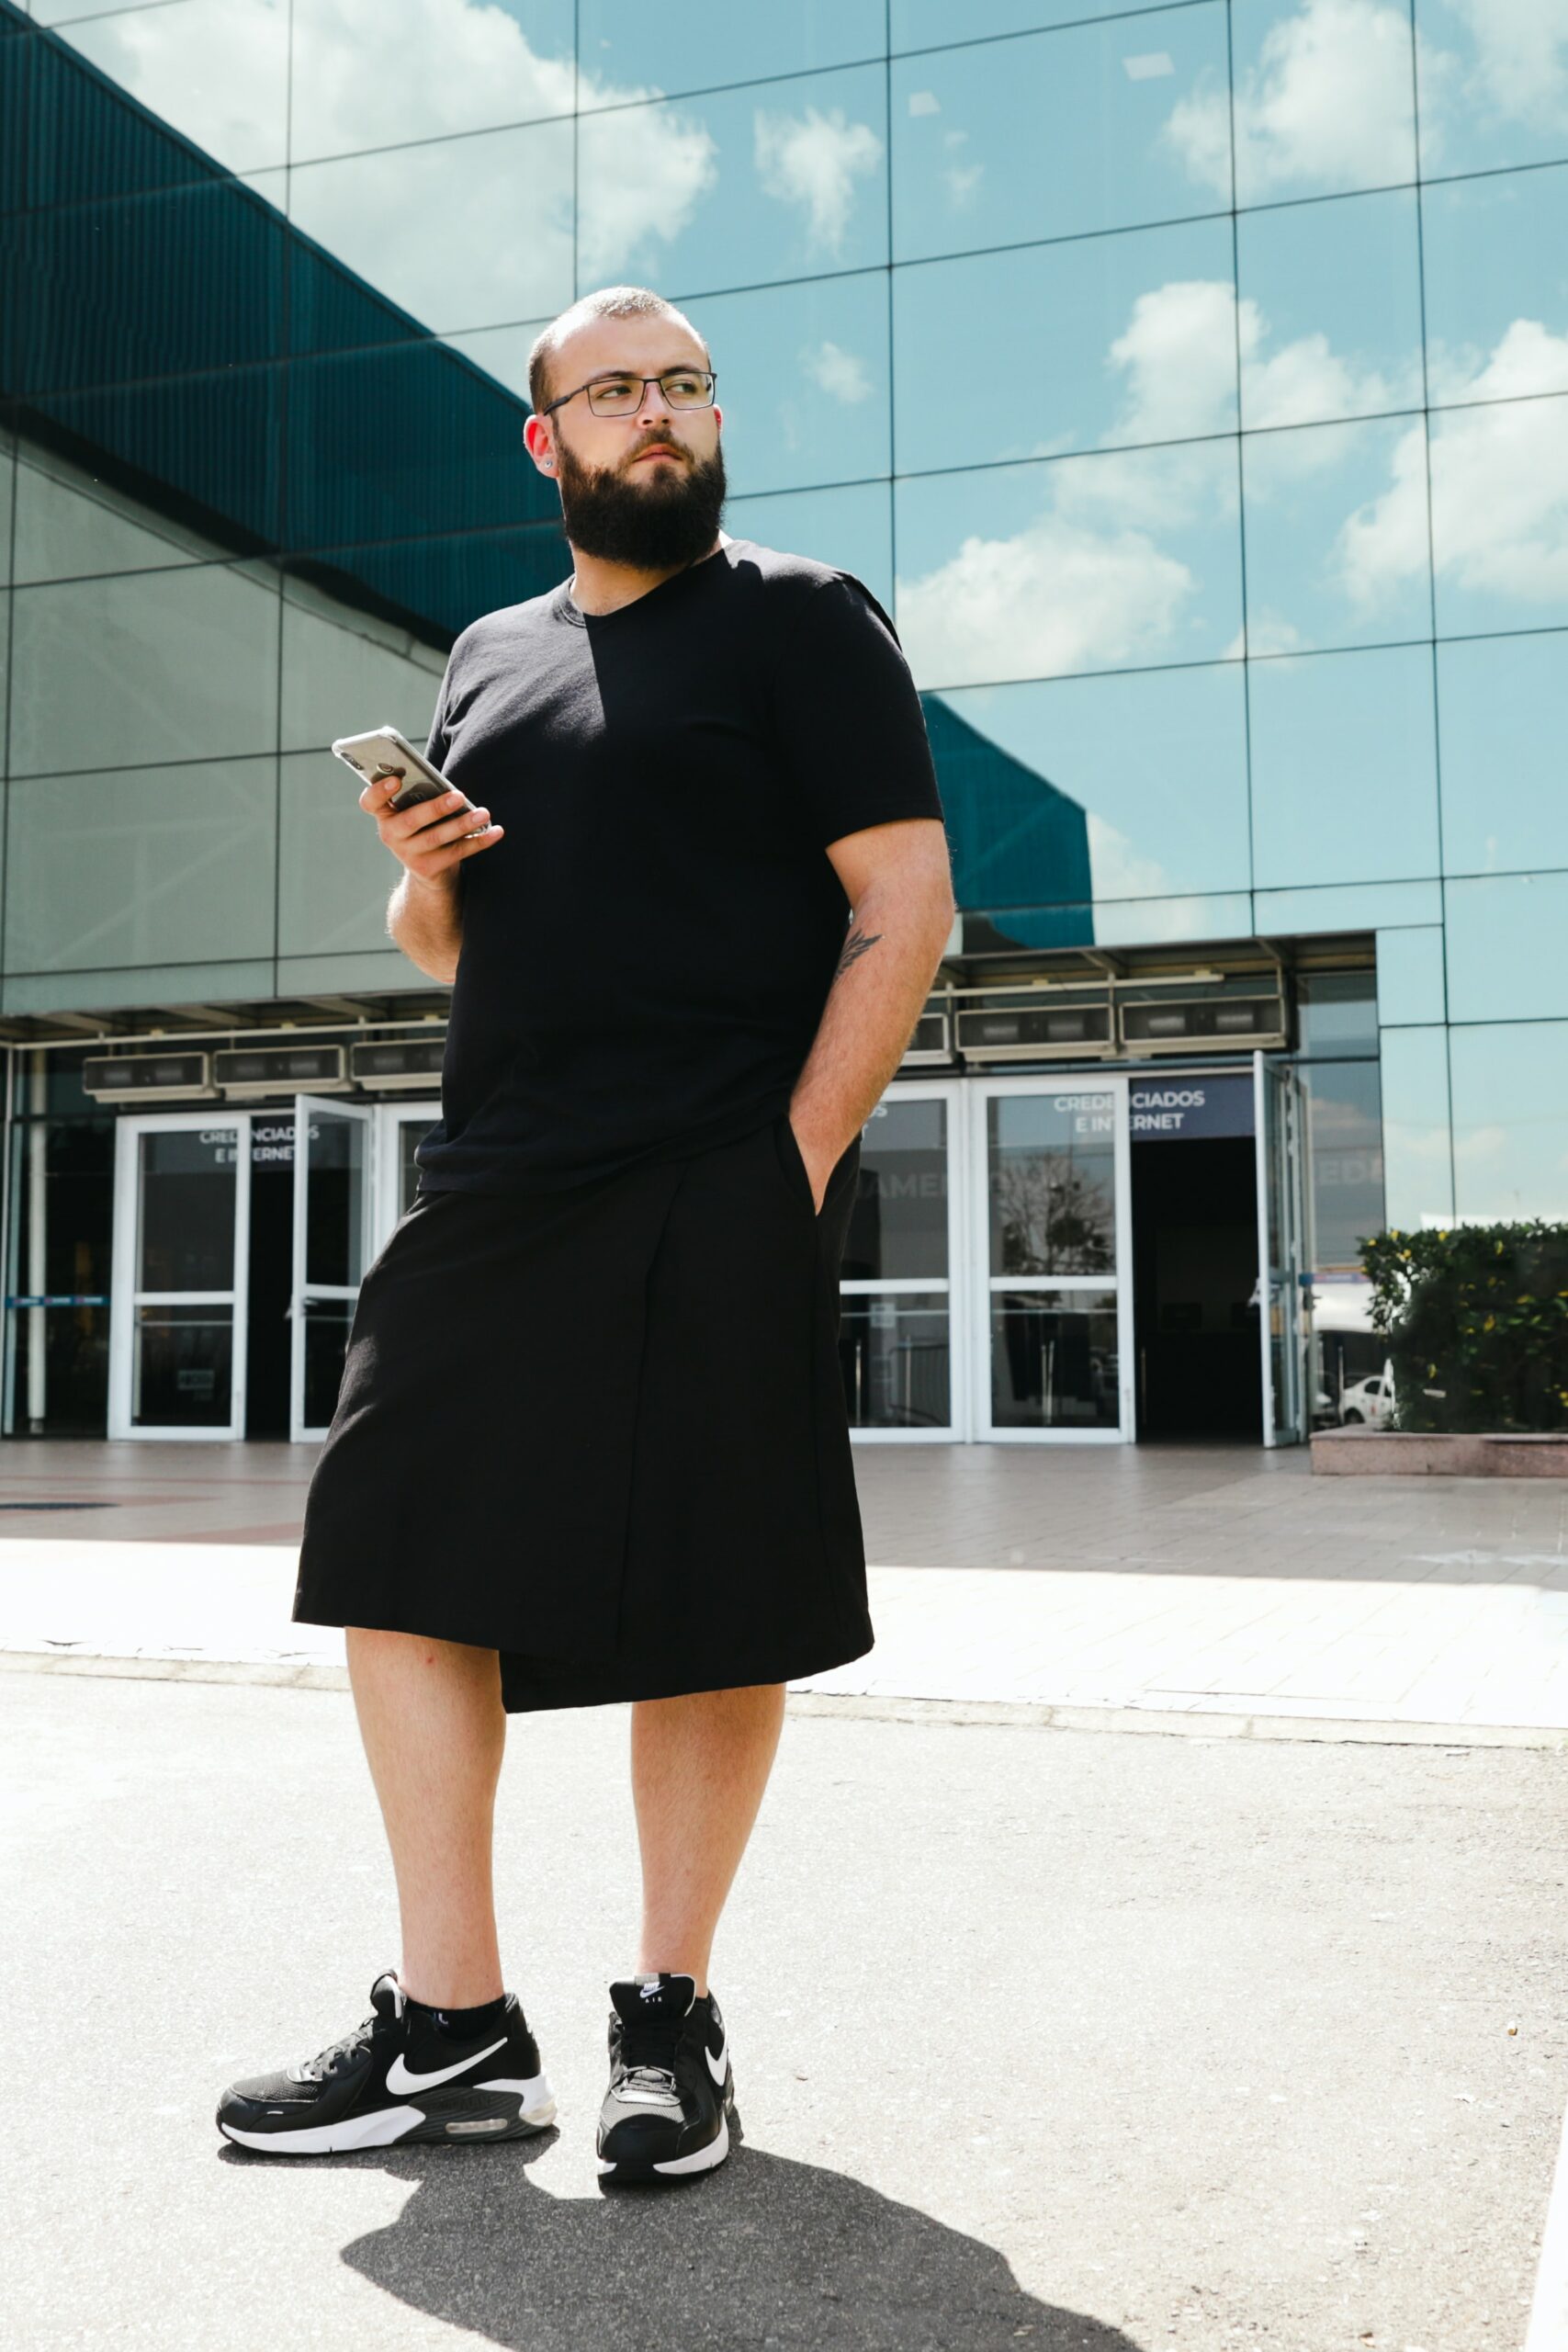 Verter Subdividir secretamente La nueva idea de negocio en la moda: ¿Hombres con falda?